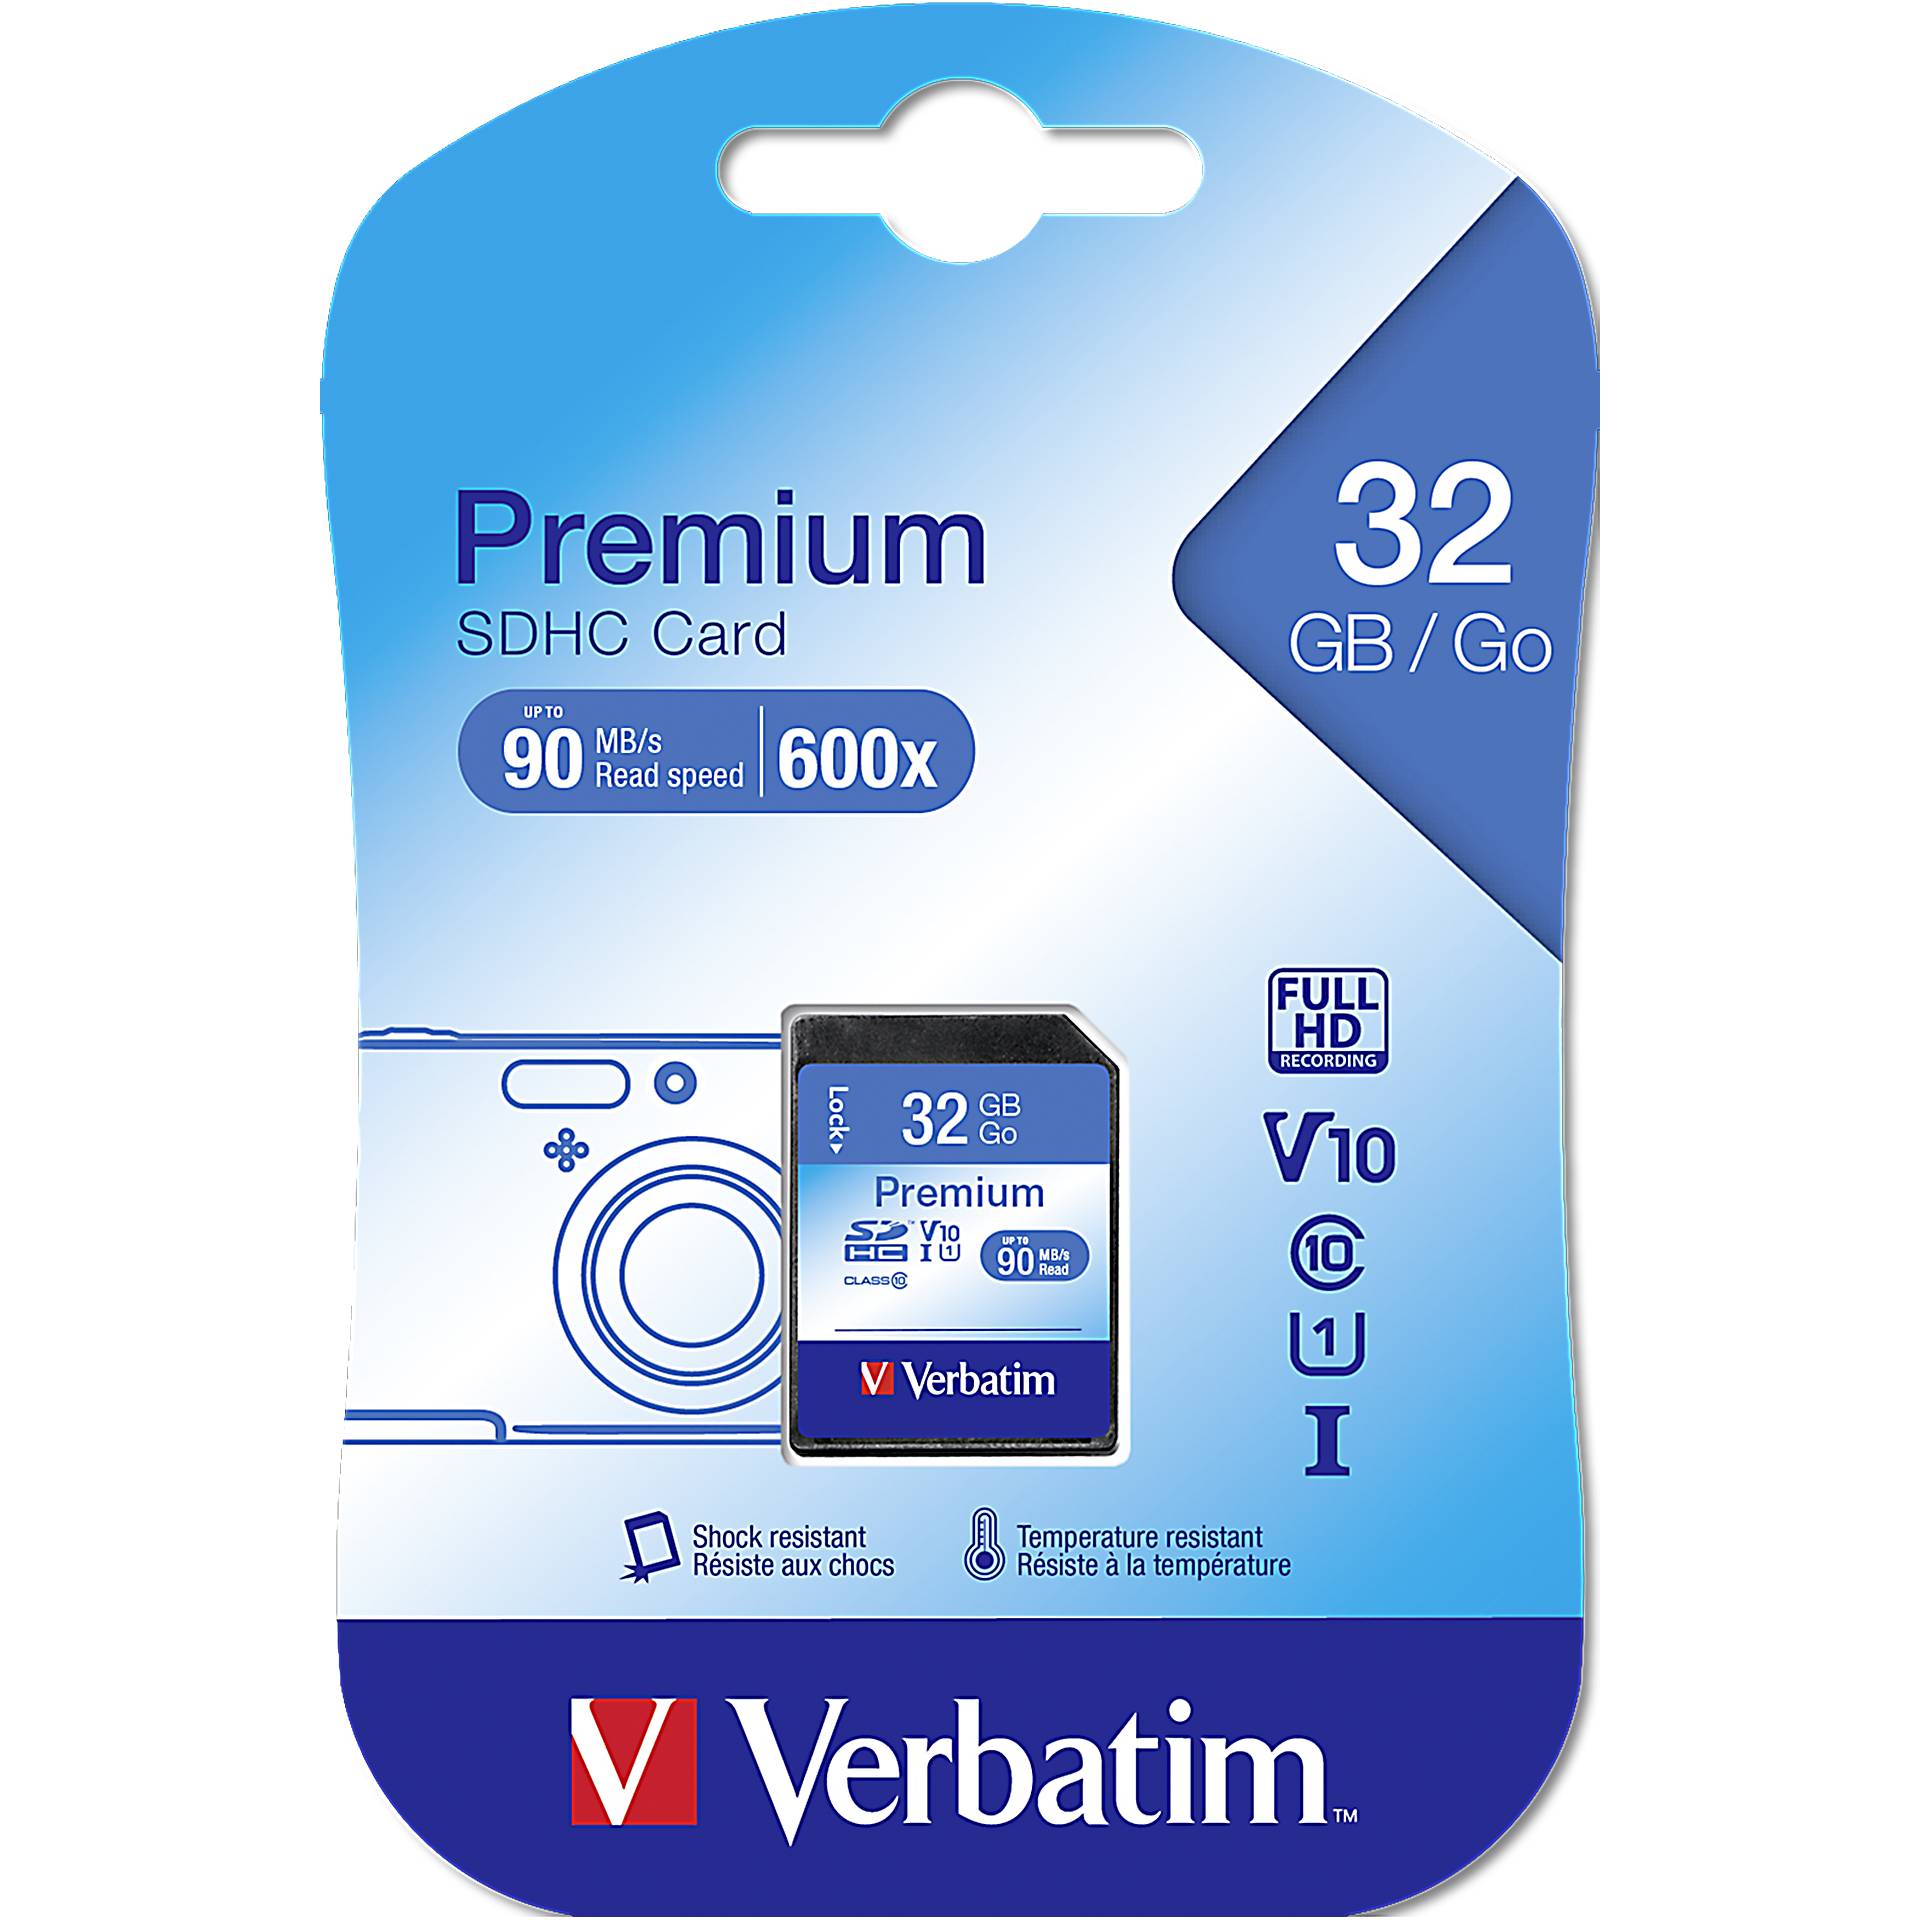 32GB Verbatim Premium Class10 SDHC Speicherkarte 